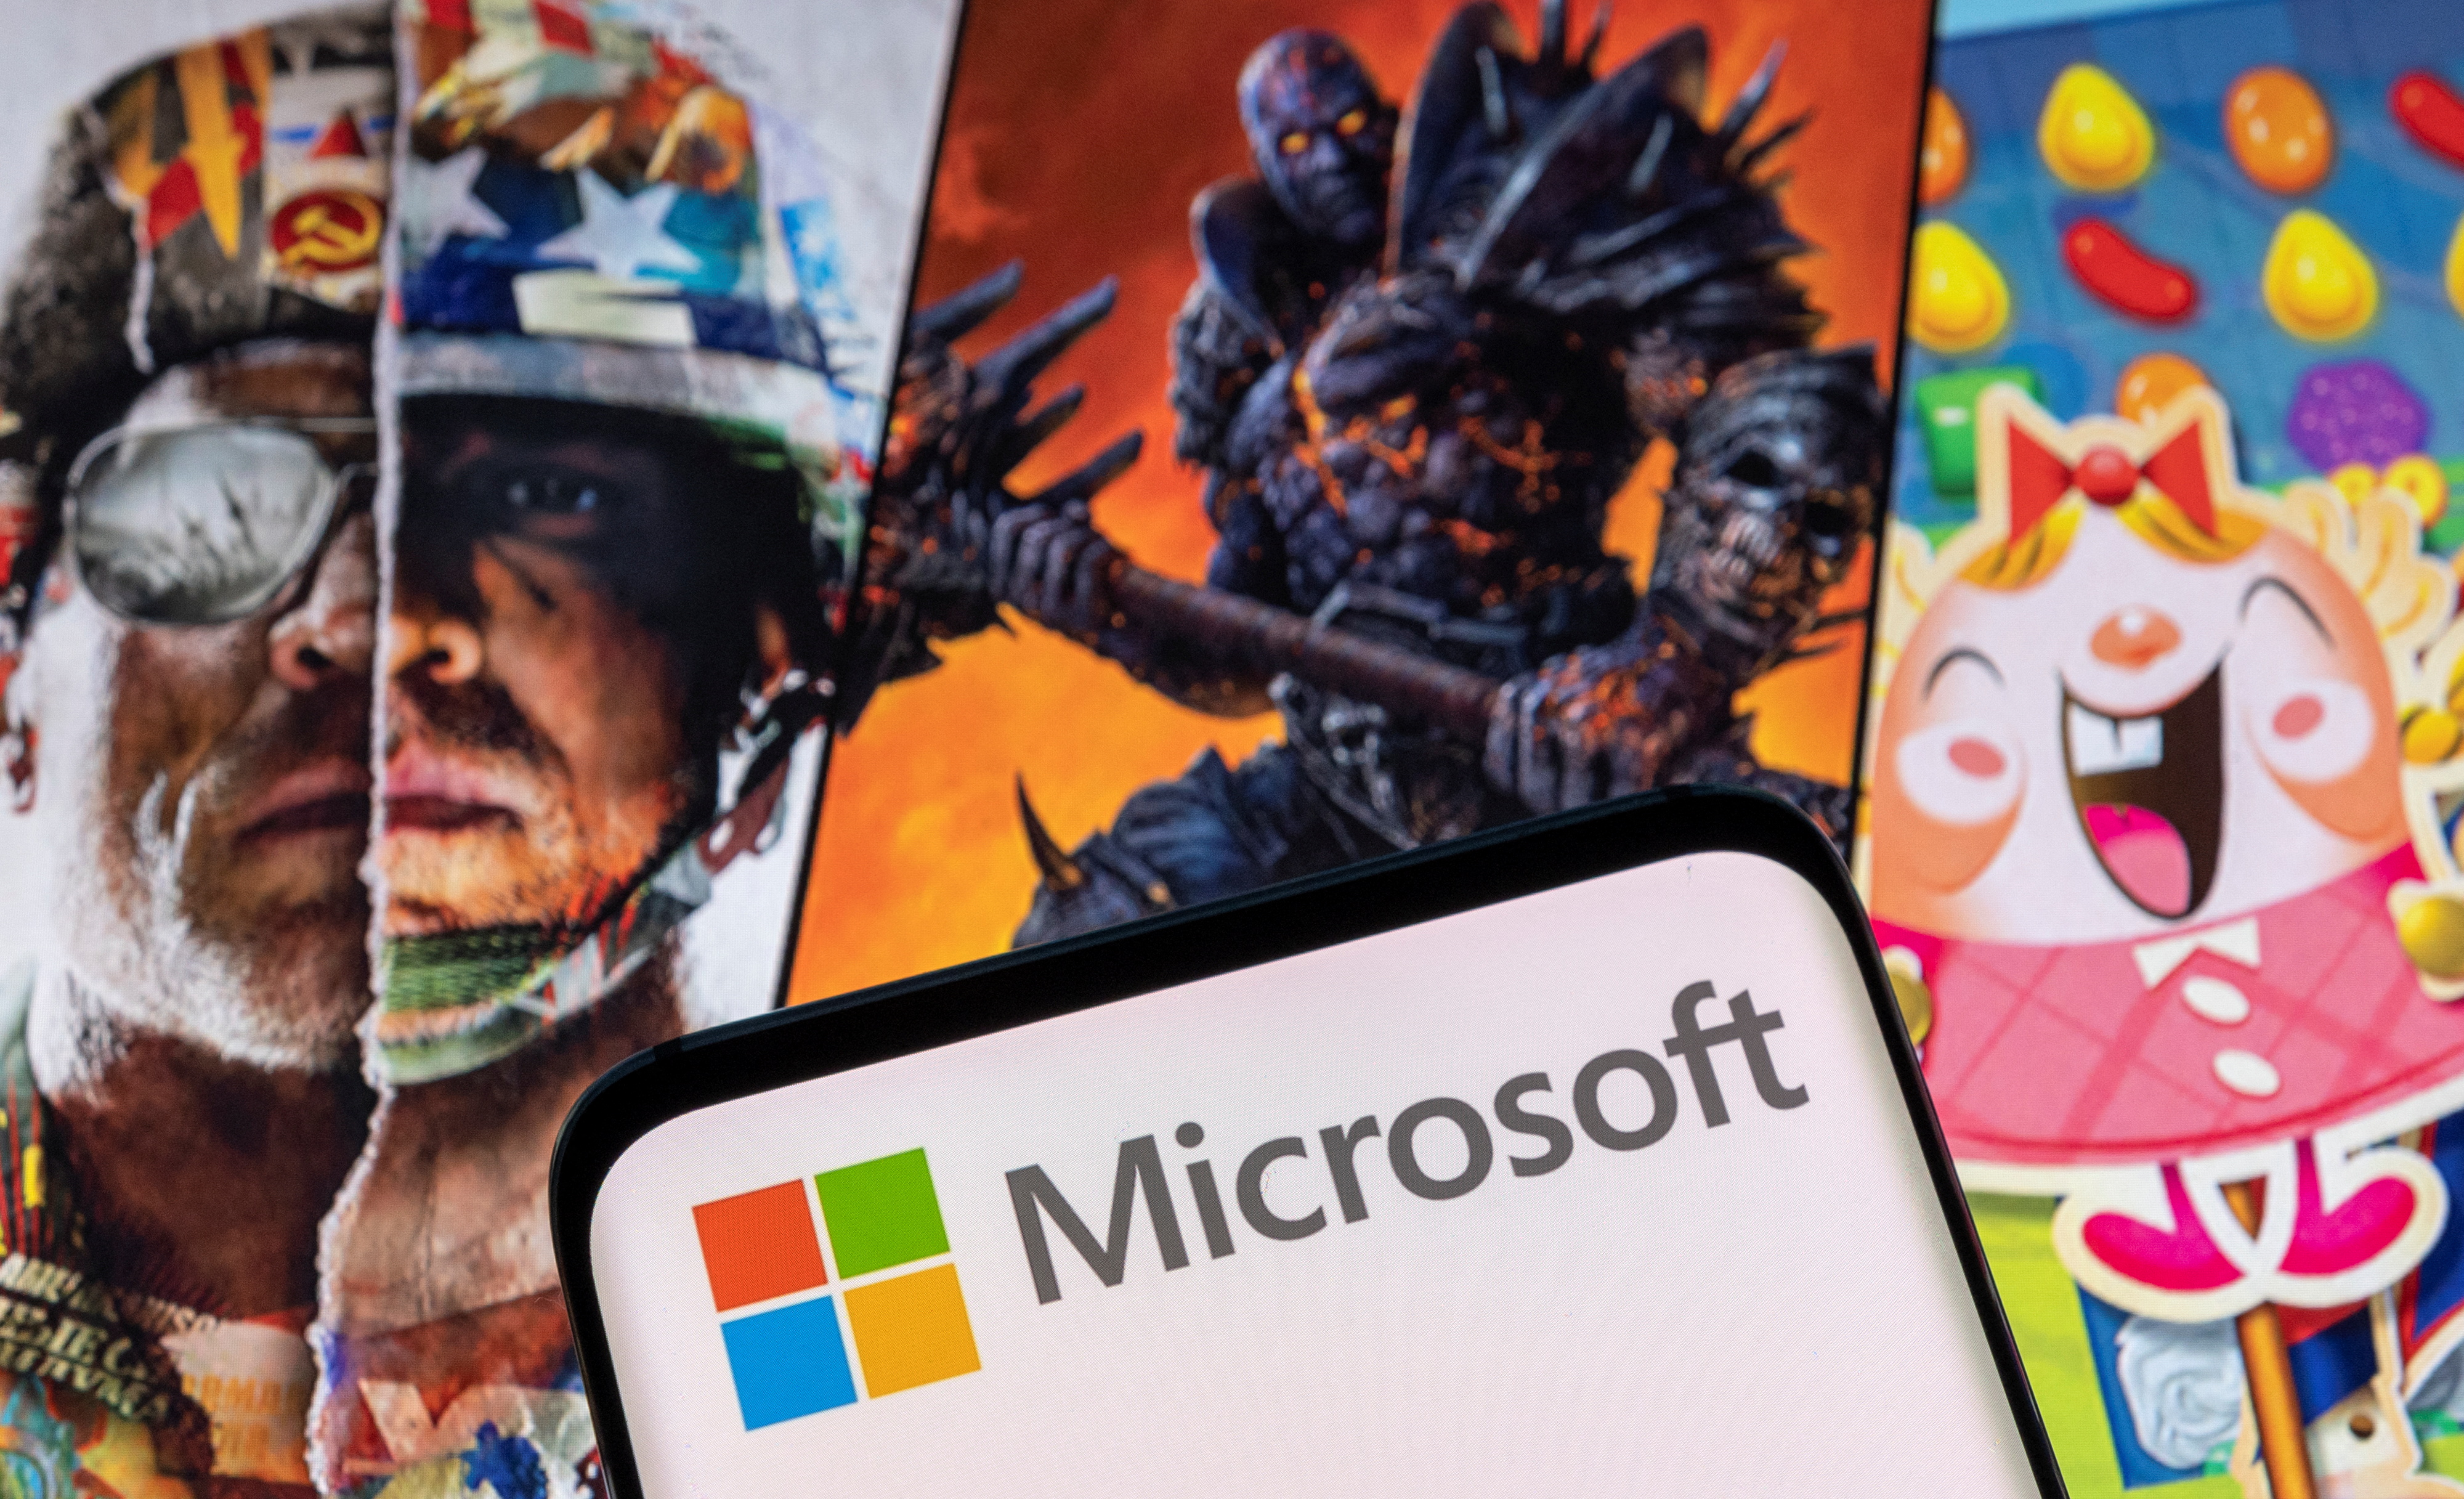 Microsoft adquirió Activision para ganar terreno en el metaverso (Foto: REUTERS/Dado Ruvic/Illustration)